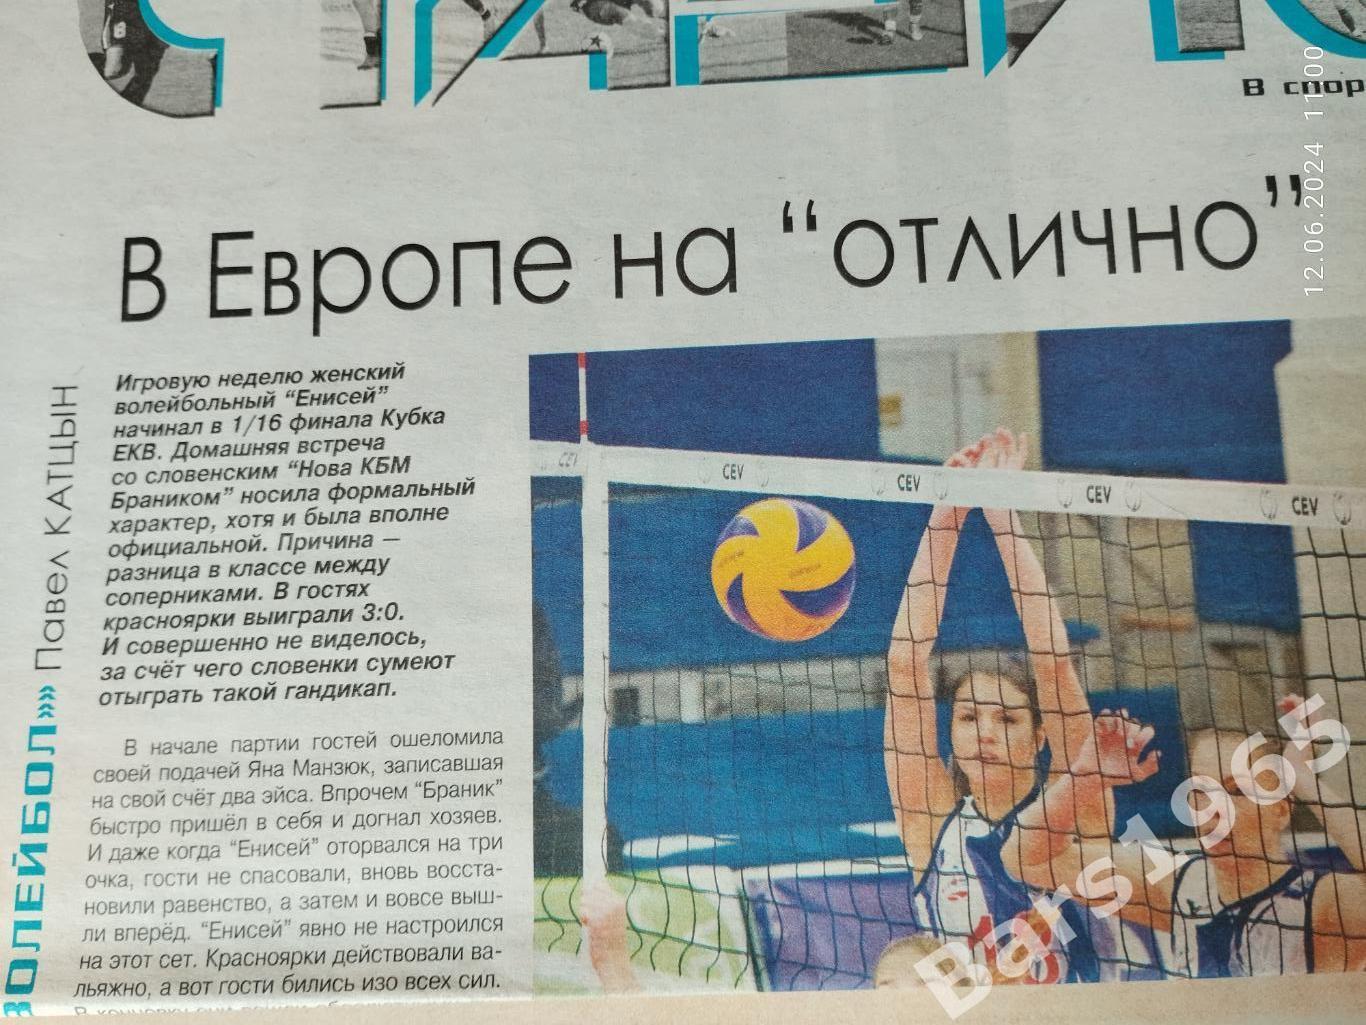 Енисей Красноярск - Нова КБМ Браник Словения 2018 Волейбол Евокубок Женщины